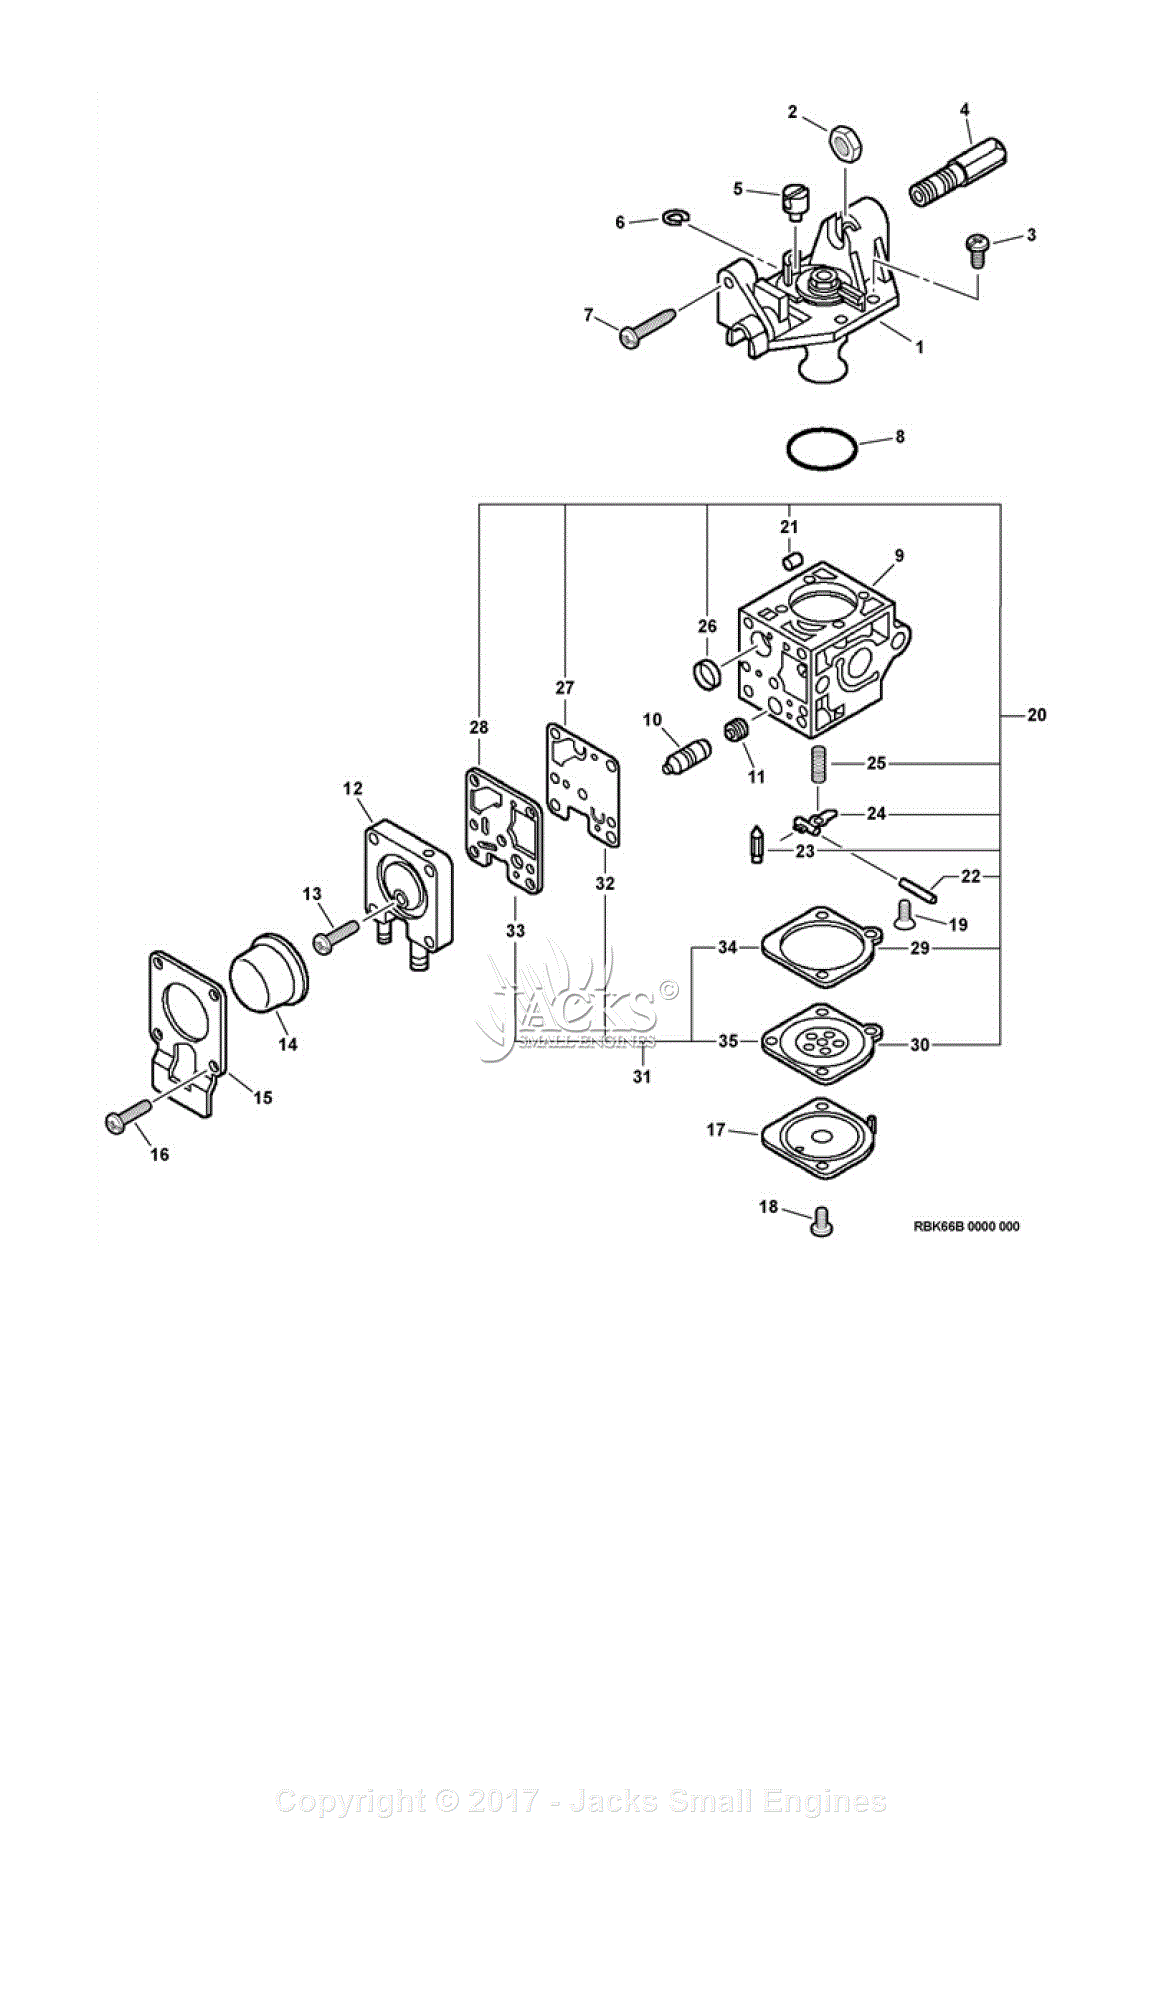 Echo Srm 210 Parts Diagram - General Wiring Diagram